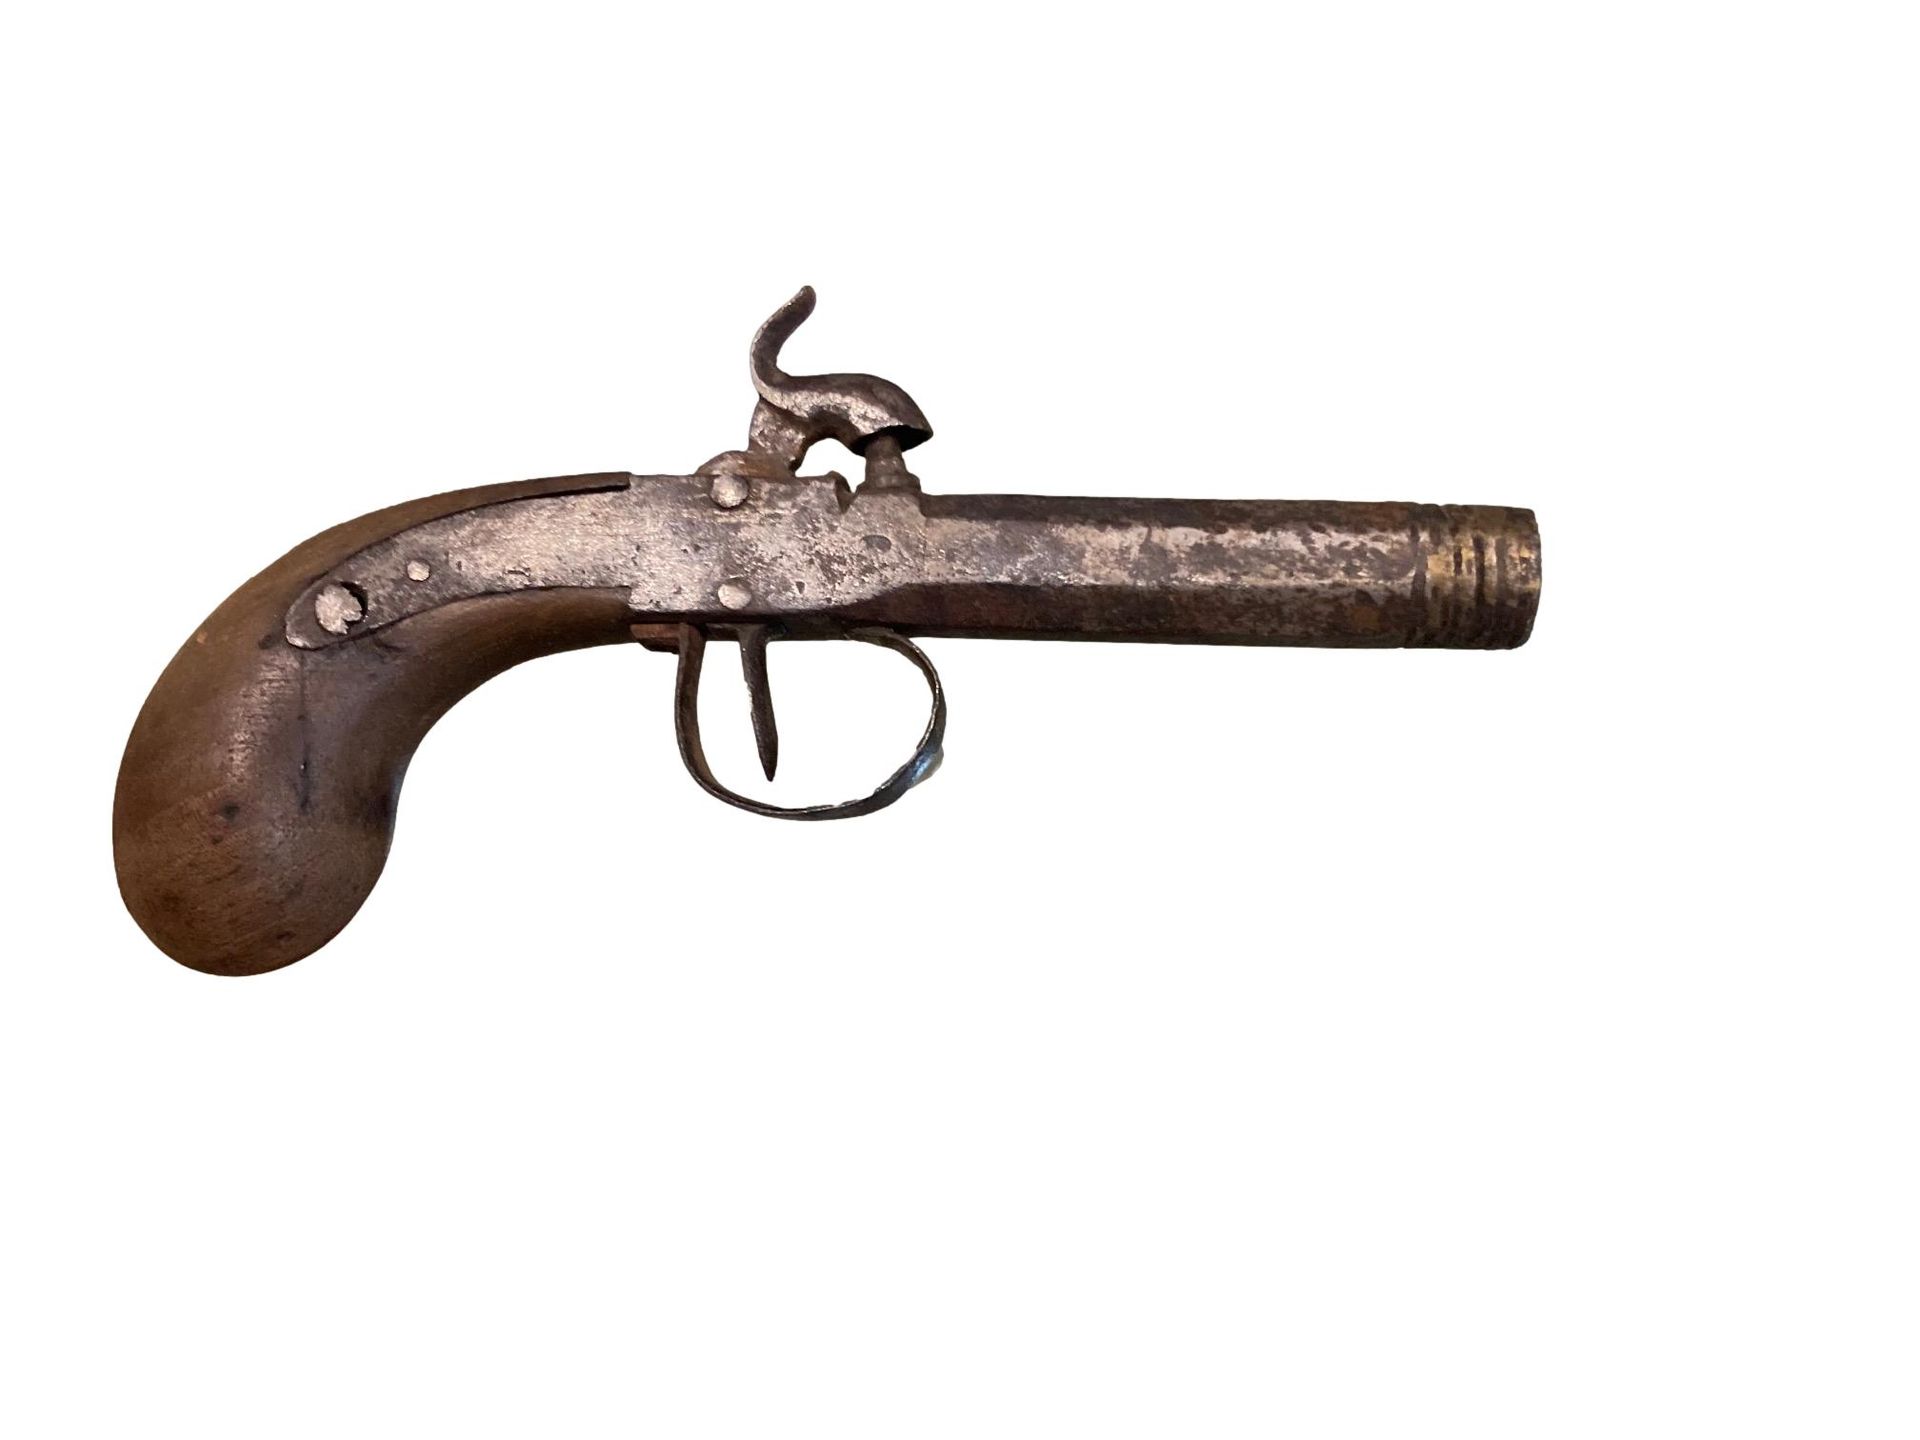 Null 路易十四时期的Arçon手枪。
燧发枪锁，枪身扁平，天鹅颈锤为圆形。
枪管有侧面，然后是圆形。
胡桃木枪托，全铁配件。
枪管被缩短，以便 "随心所欲 &hellip;